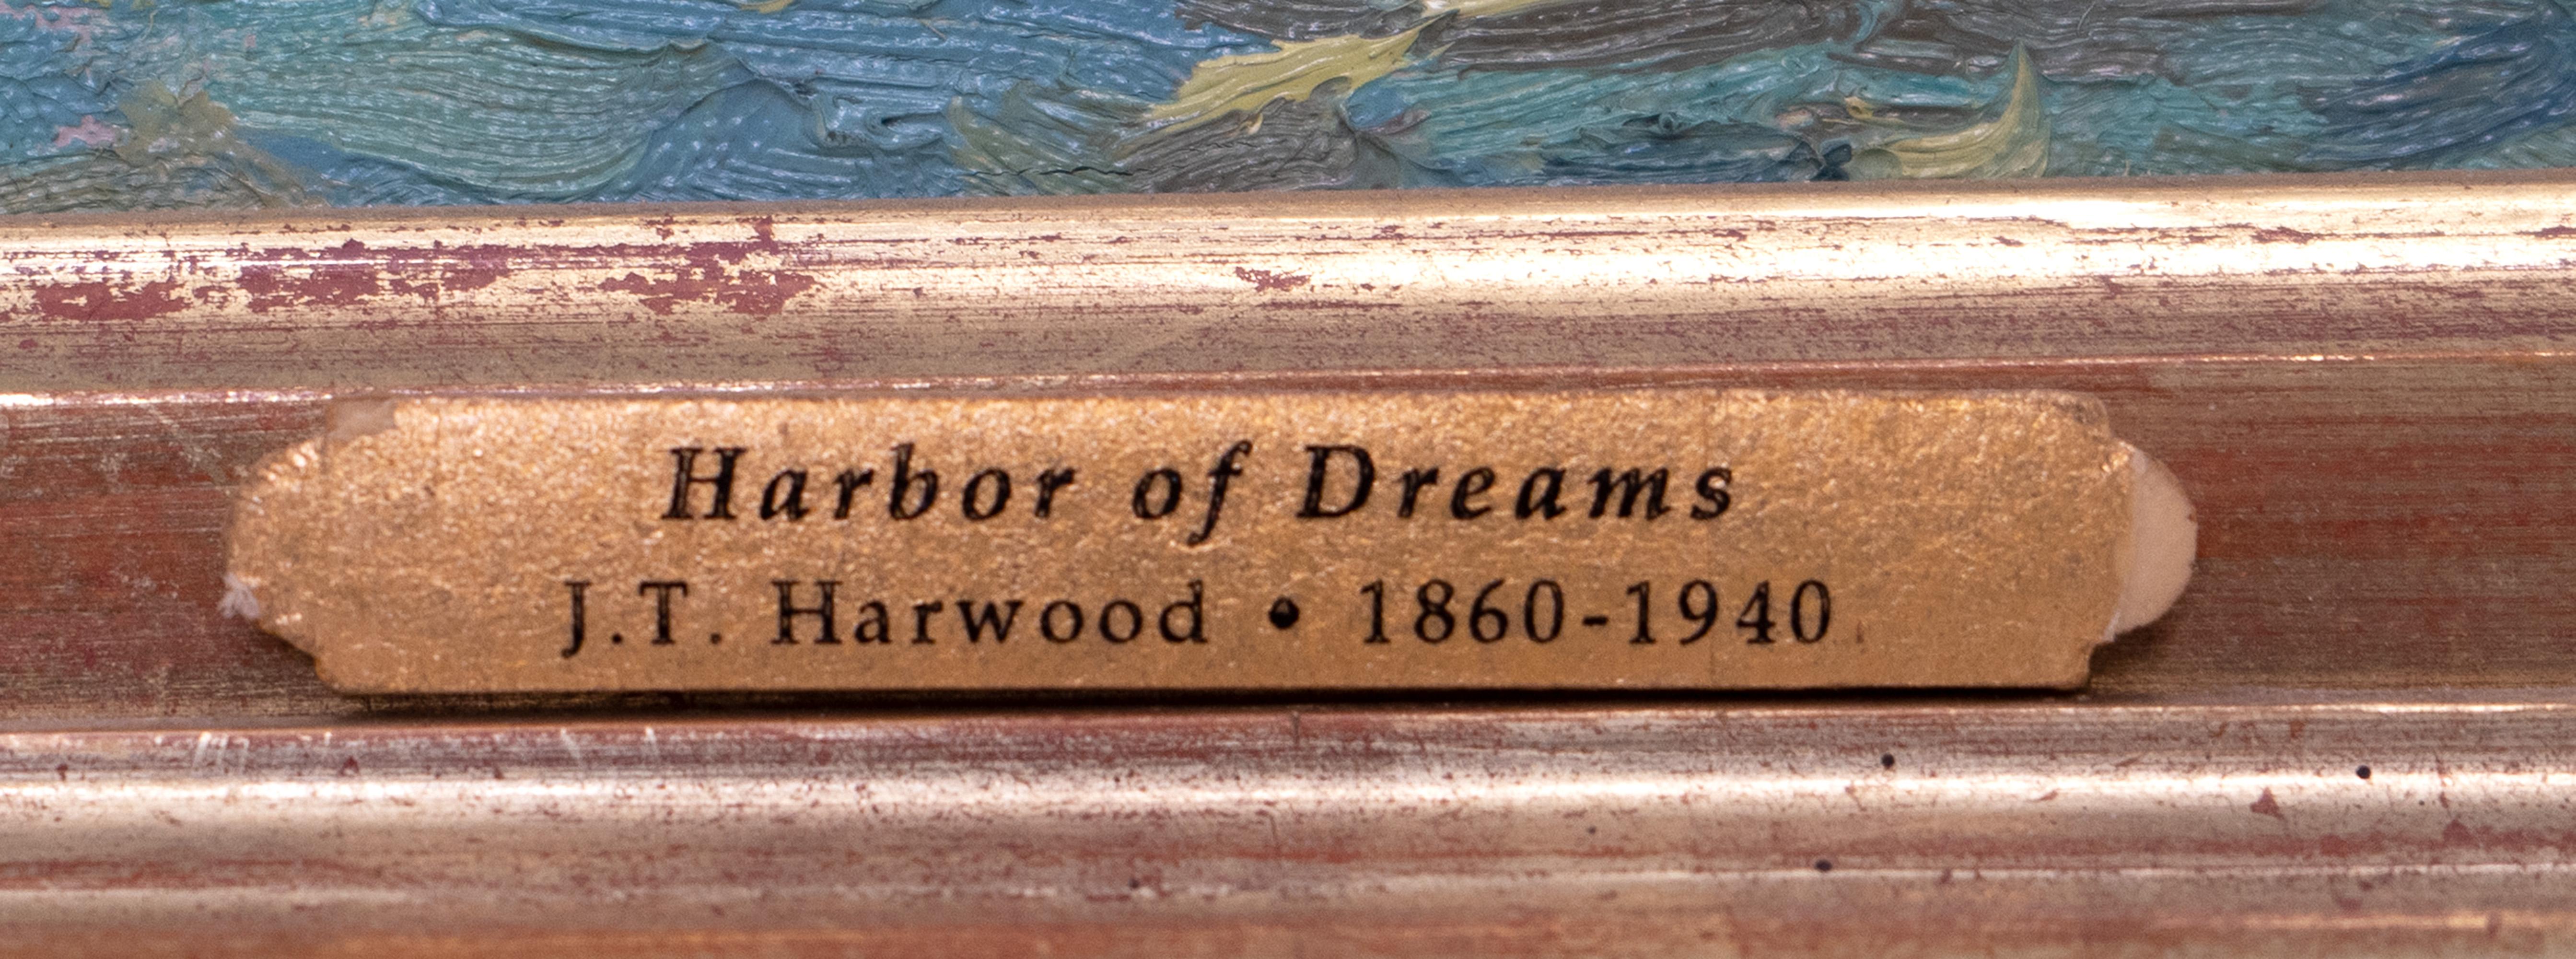 James T. Harwood (Utah, 1860-1940)

Born, in 1860 in Lehi, Utah, J. T. Harwood was a renowned pioneer of Utah art. In 1888, at the urging of mentors George M. Ottinger and Danquart A. Weggeland, J.T. Harwood was among the first envoy of Utah-born